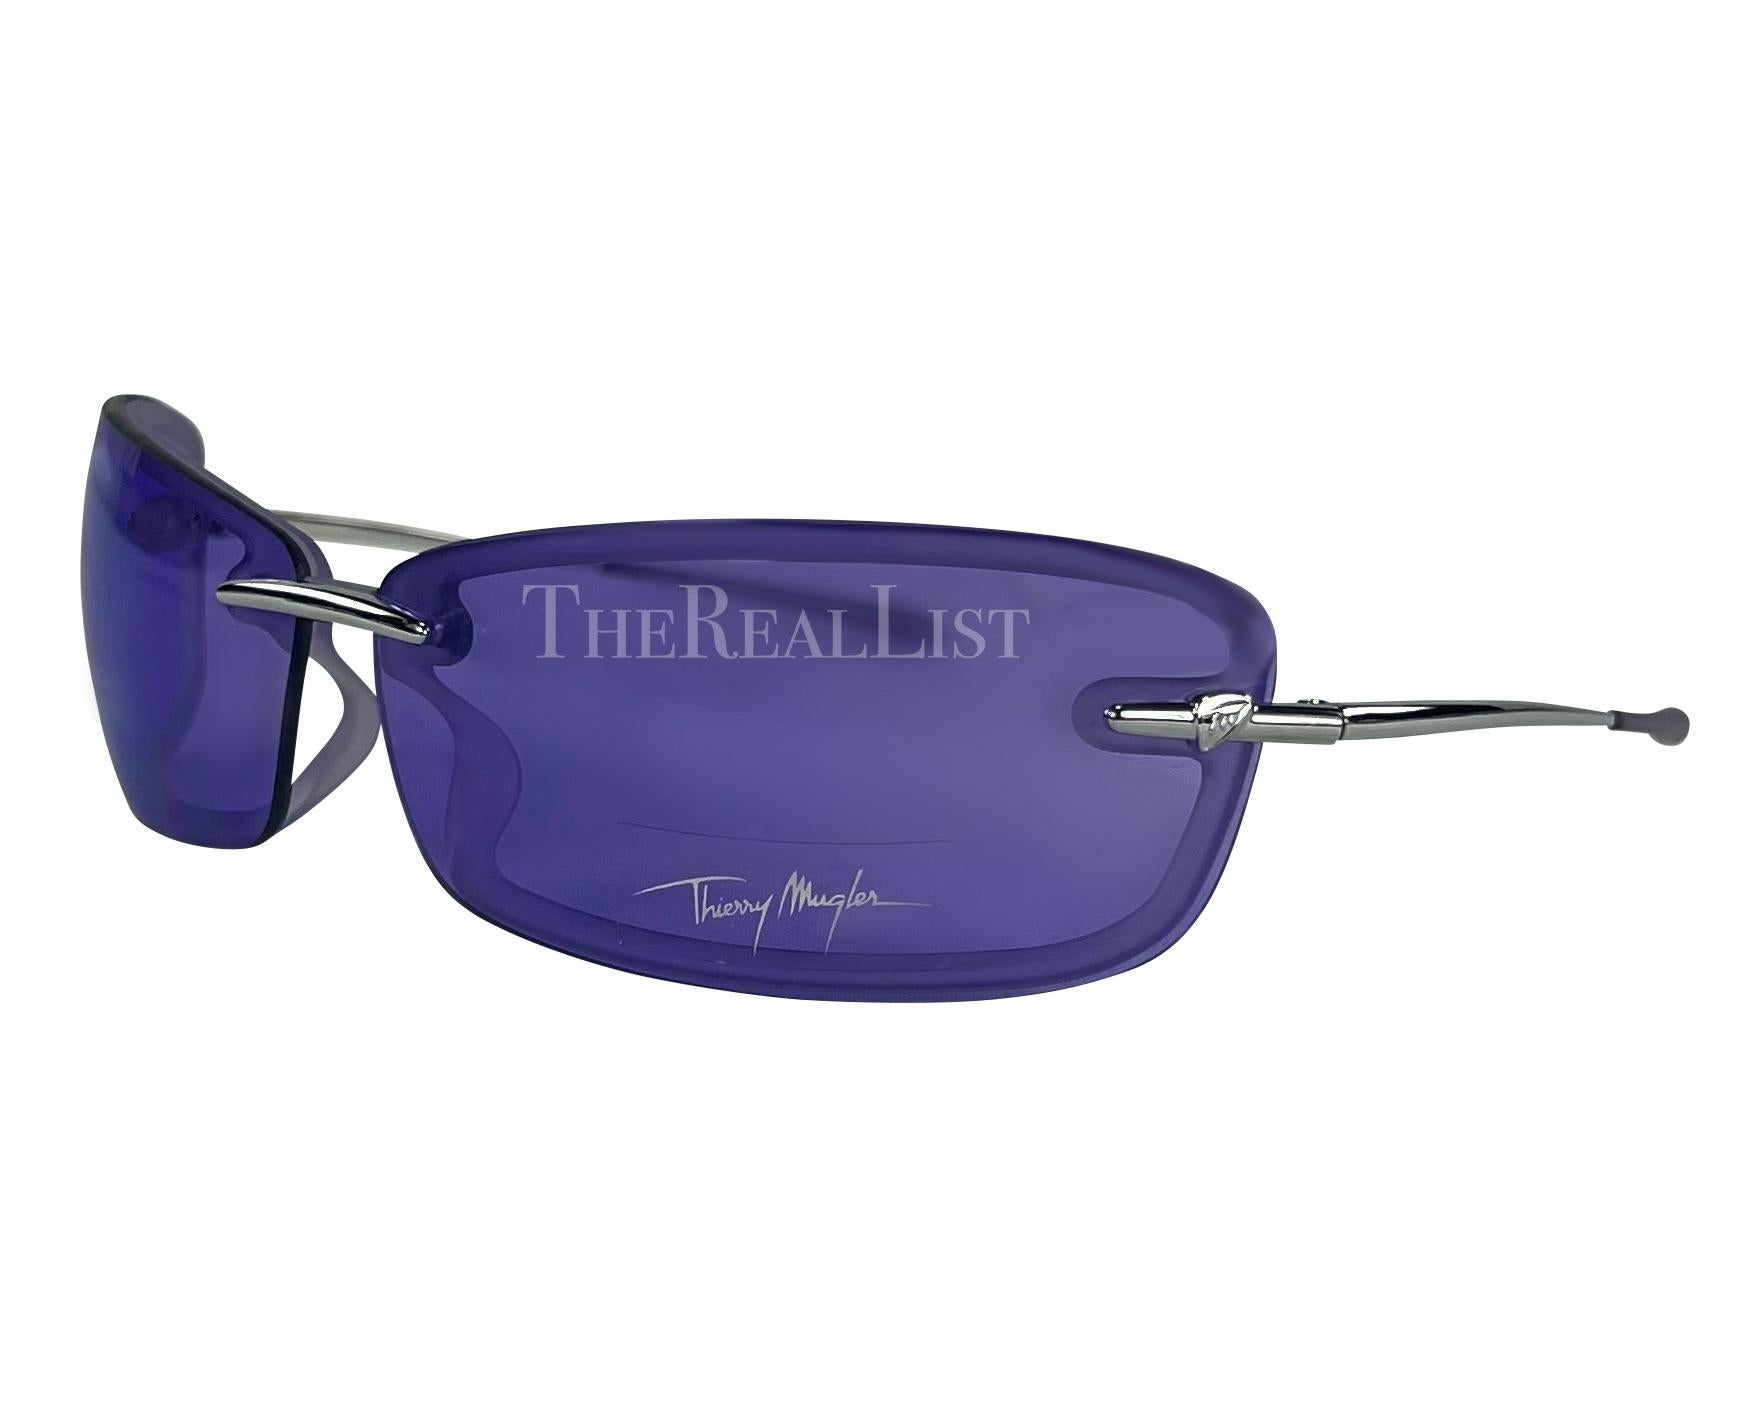 Voici une paire de lunettes de soleil Thierry Mugler d'un violet incroyable, conçue par Manfred Mugler. Datant du début des années 2000, ces lunettes de soleil sans monture sont dotées de verres rectangulaires violets et de branches argentées.